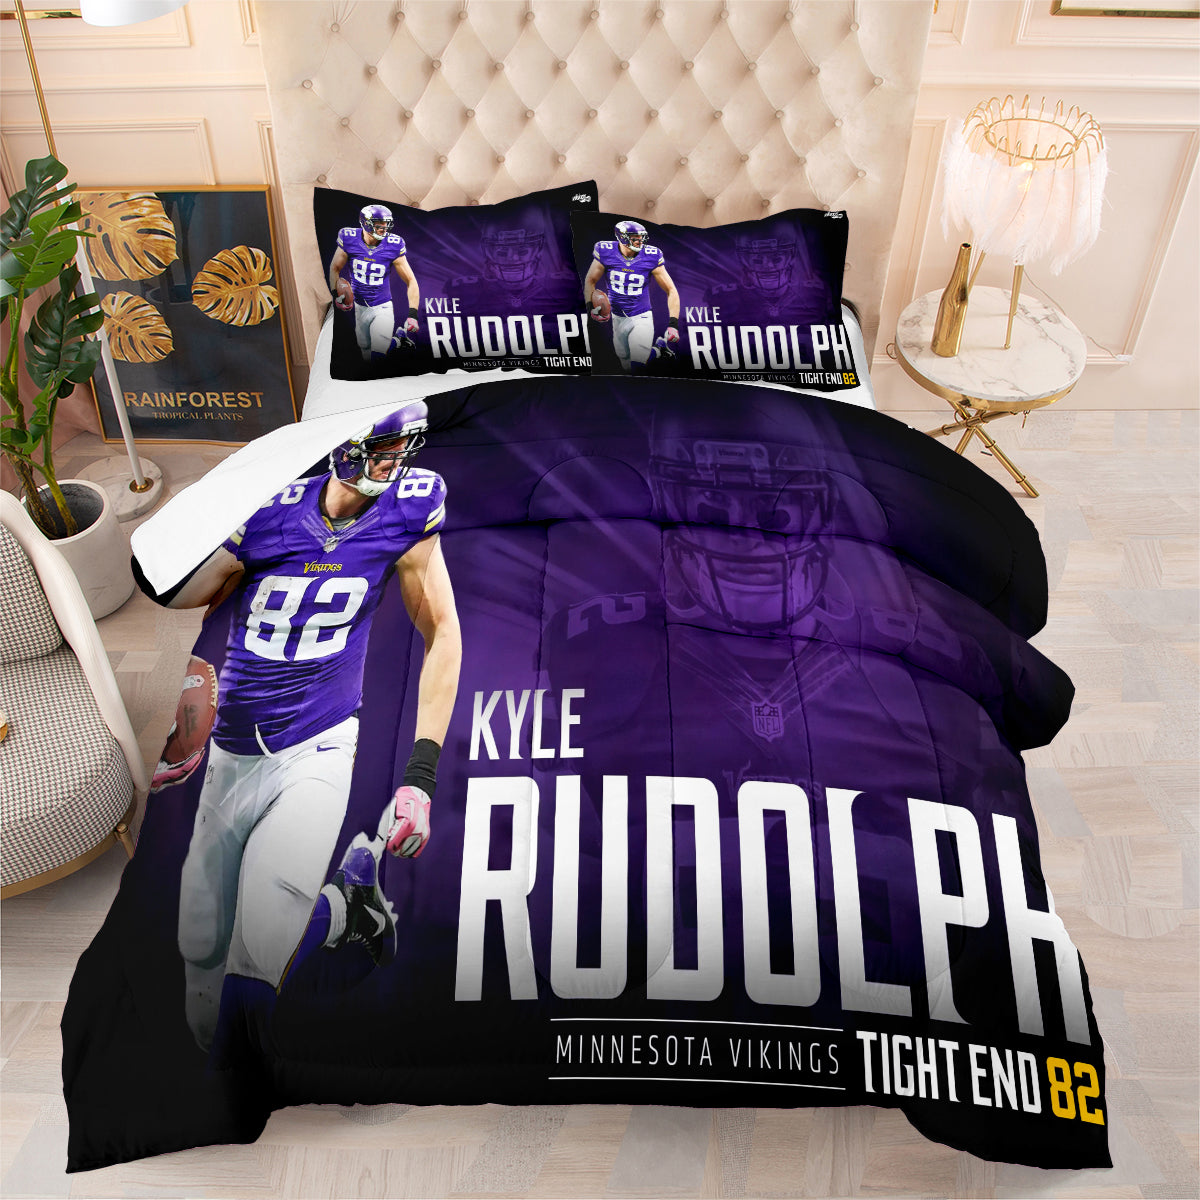 Minnesota Vikings Football Team Comforter Pillowcase Sets Blanket All Season Reversible Quilted Duvet